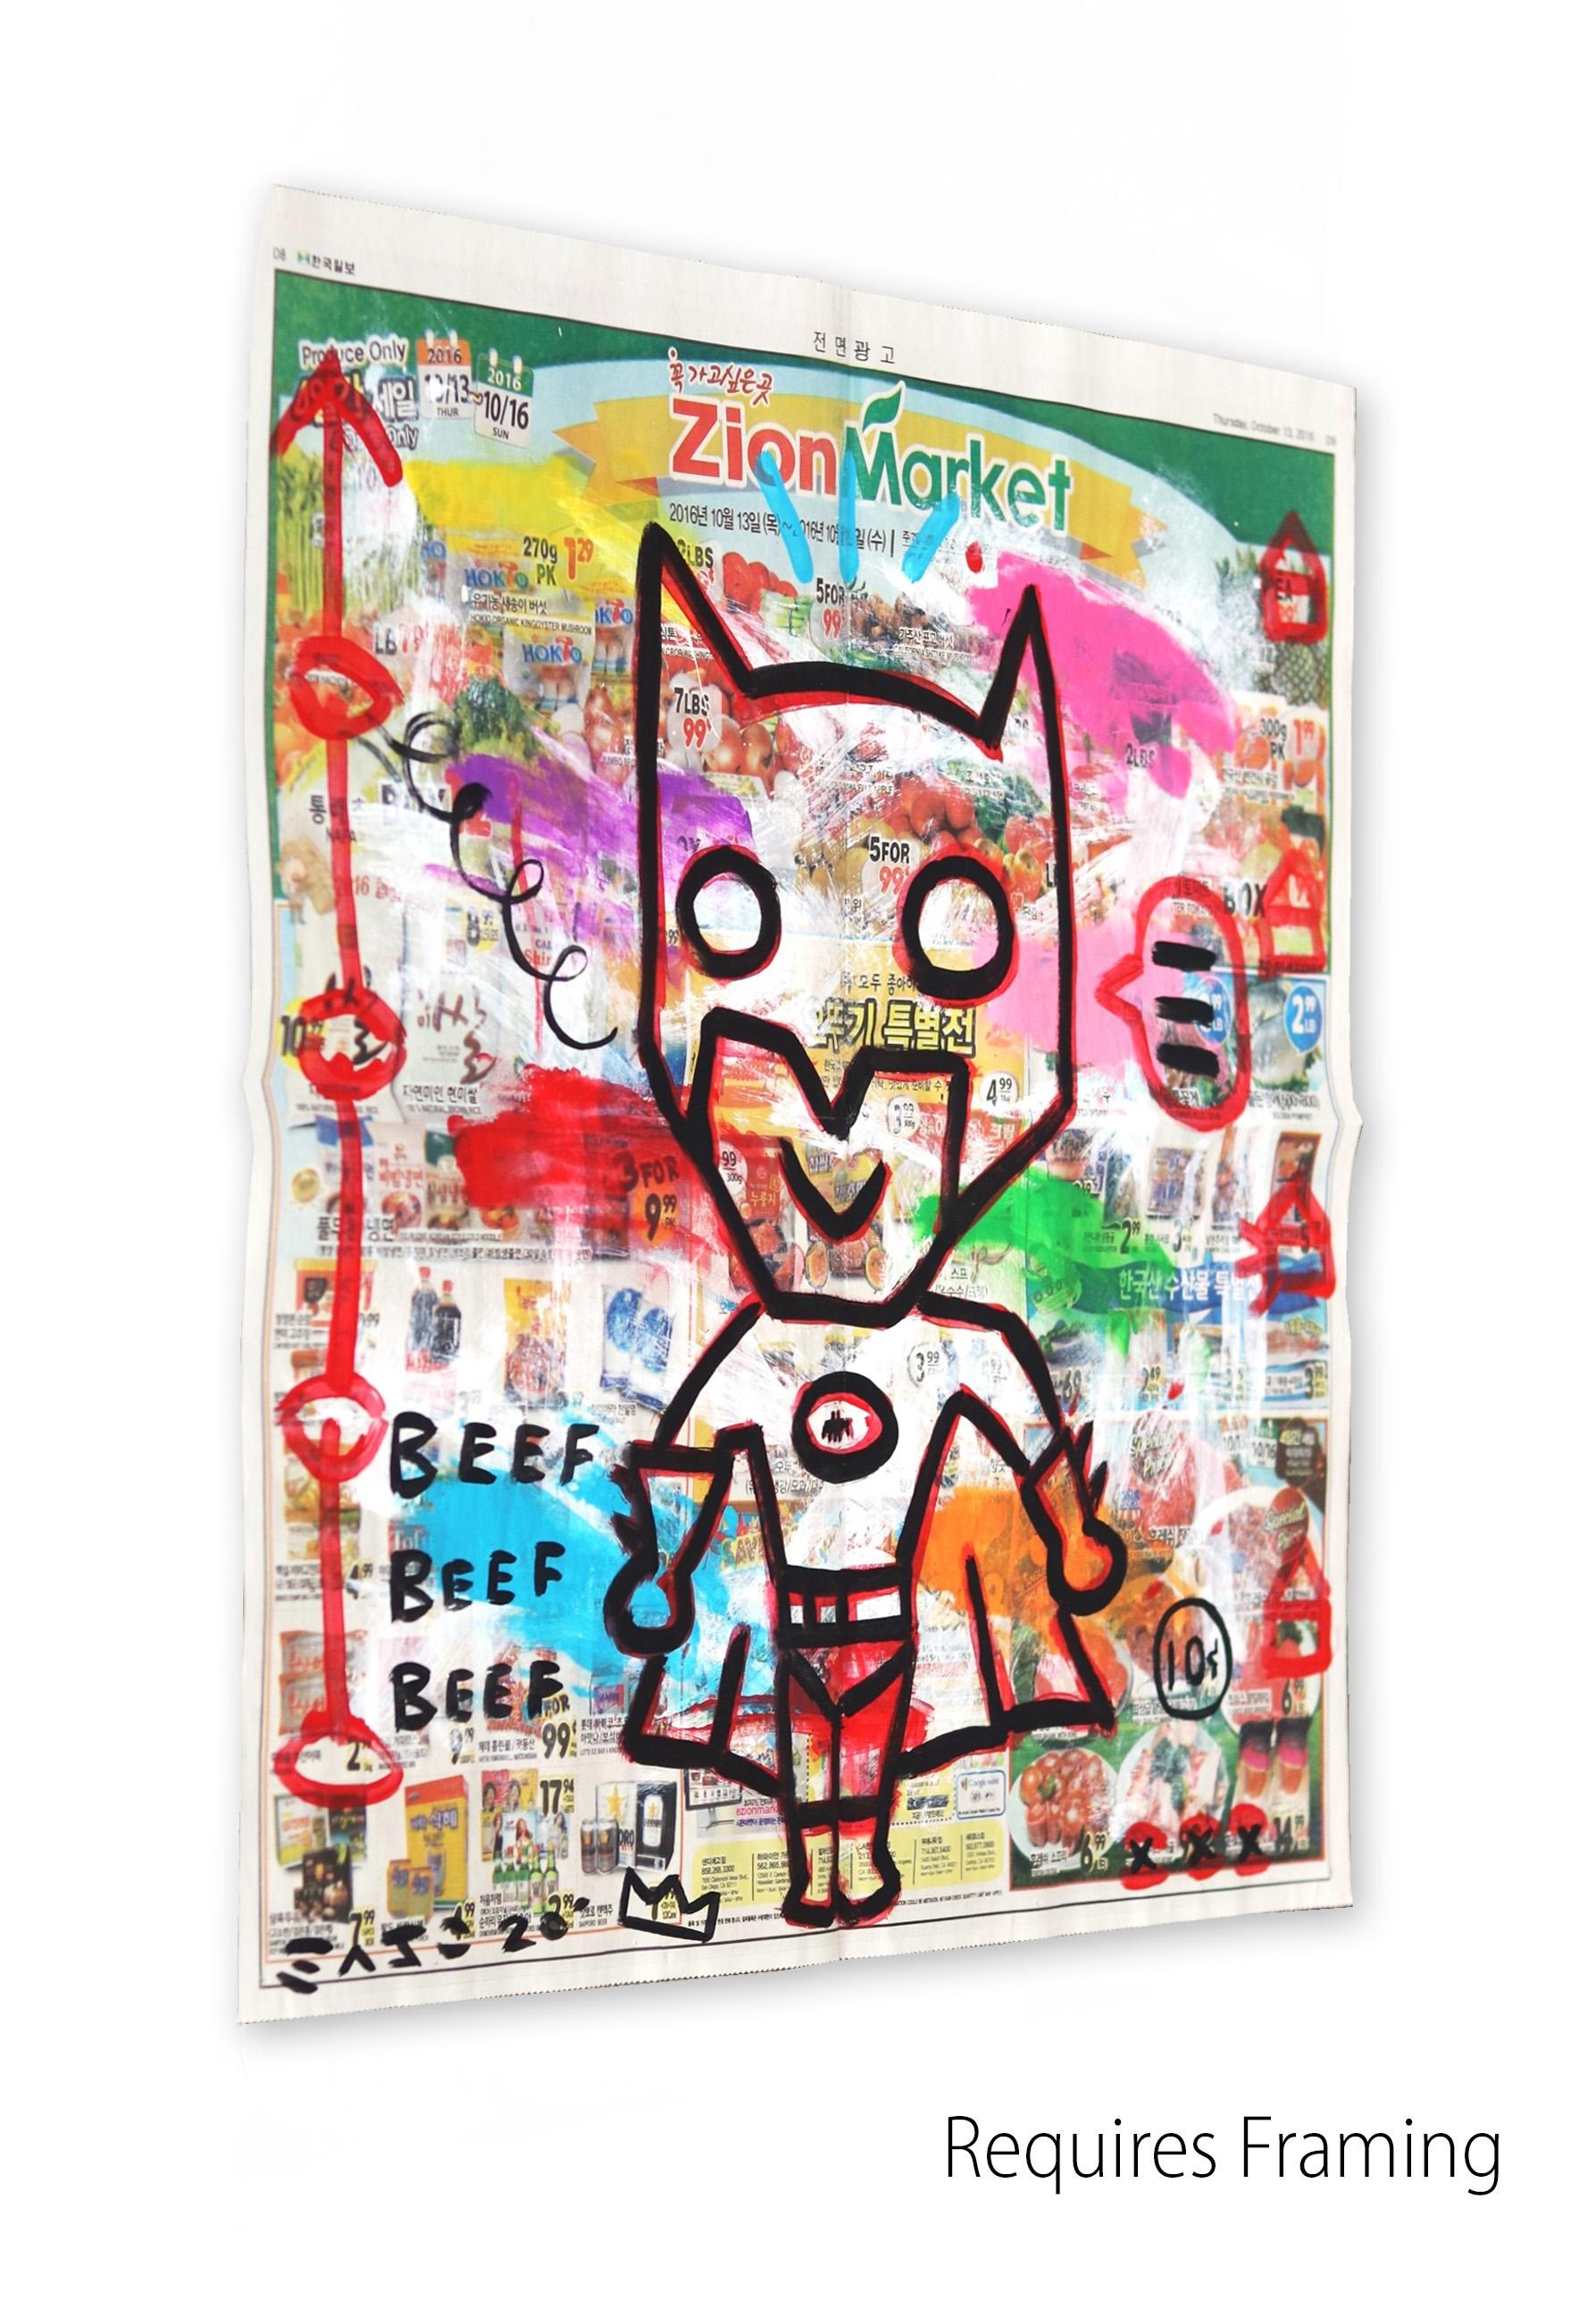 Gary John, street artiste de Los Angeles, a explosé sur la scène artistique internationale lors de la foire d'art Art Basel Miami en 2013. Le travail audacieux et ludique de John a rapidement attiré l'attention et il a été nommé l'un des 20 artistes